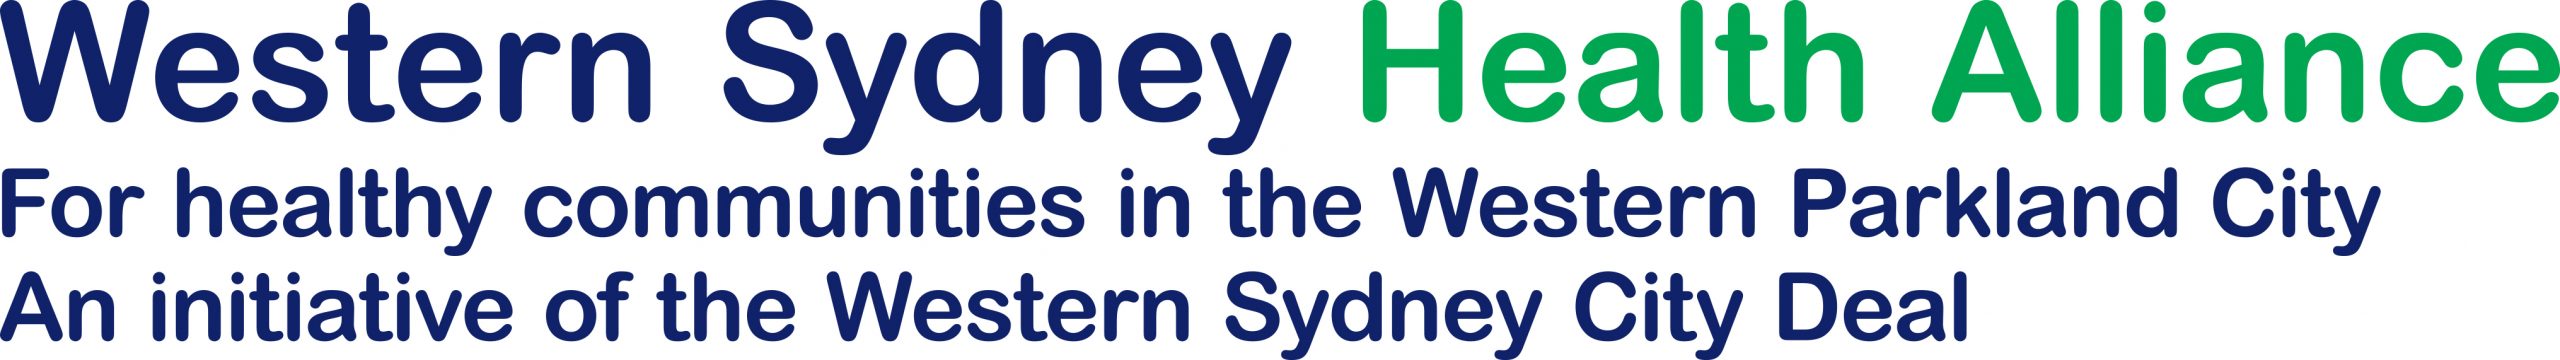 Western Sydney Health Alliance